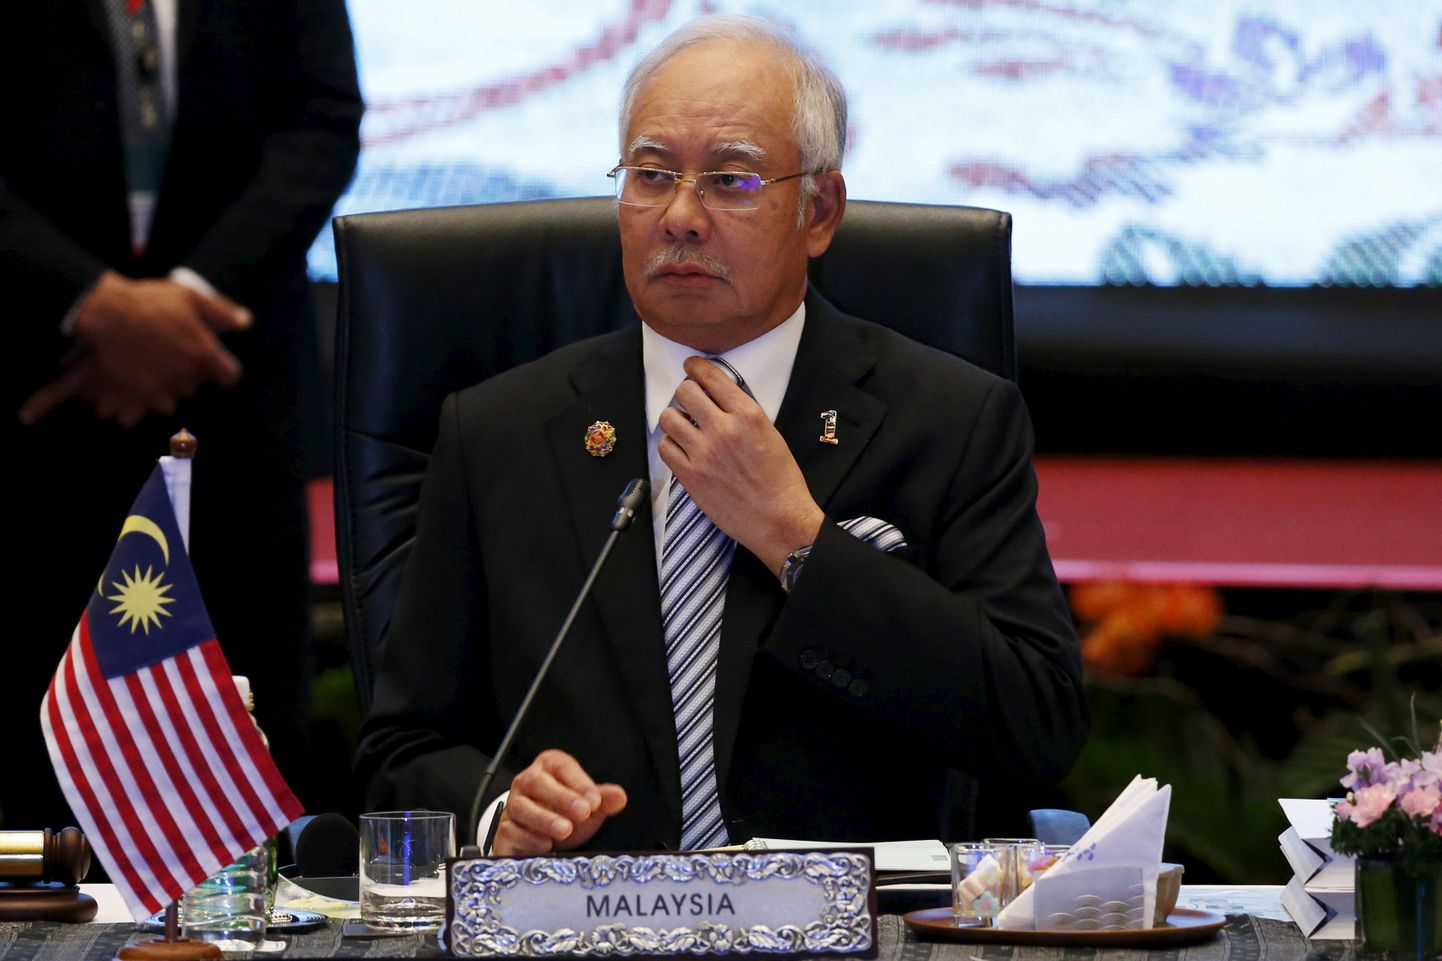 Malaisia peaminister.